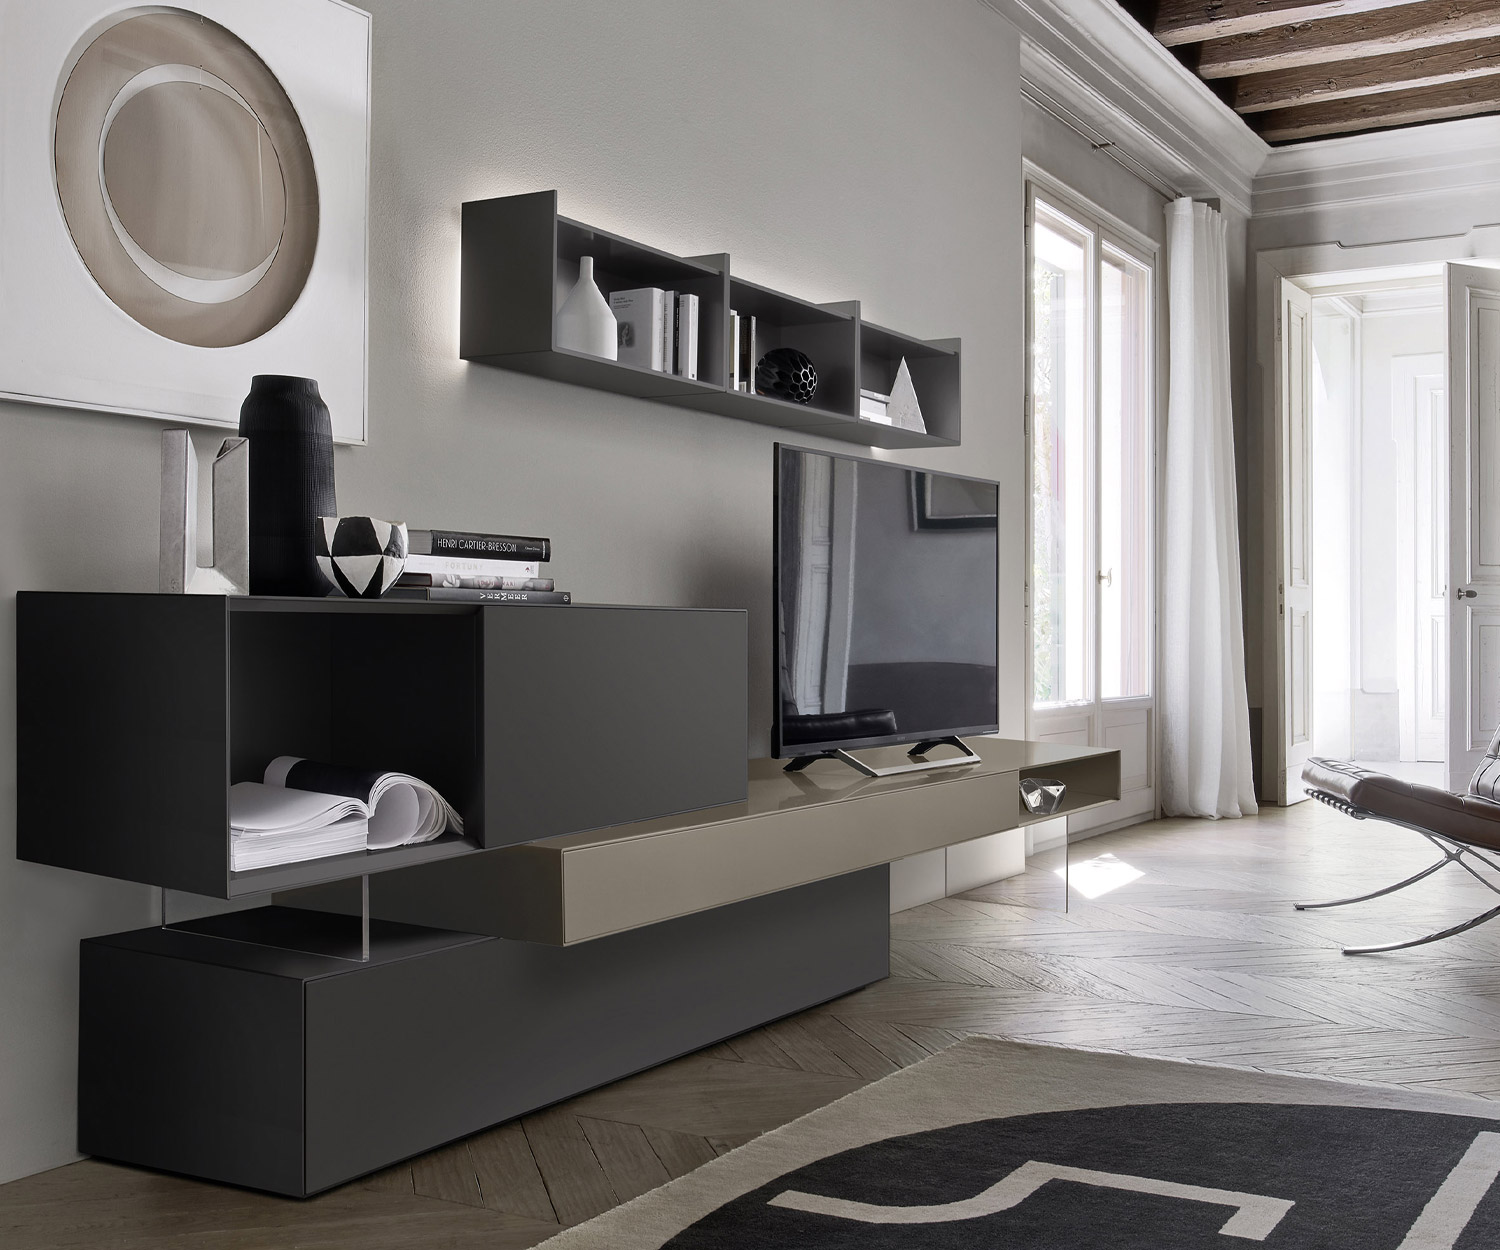 Parete attrezzata in legno laccato grigio Livitalia nel soggiorno come parte di una parete attrezzata minimalista